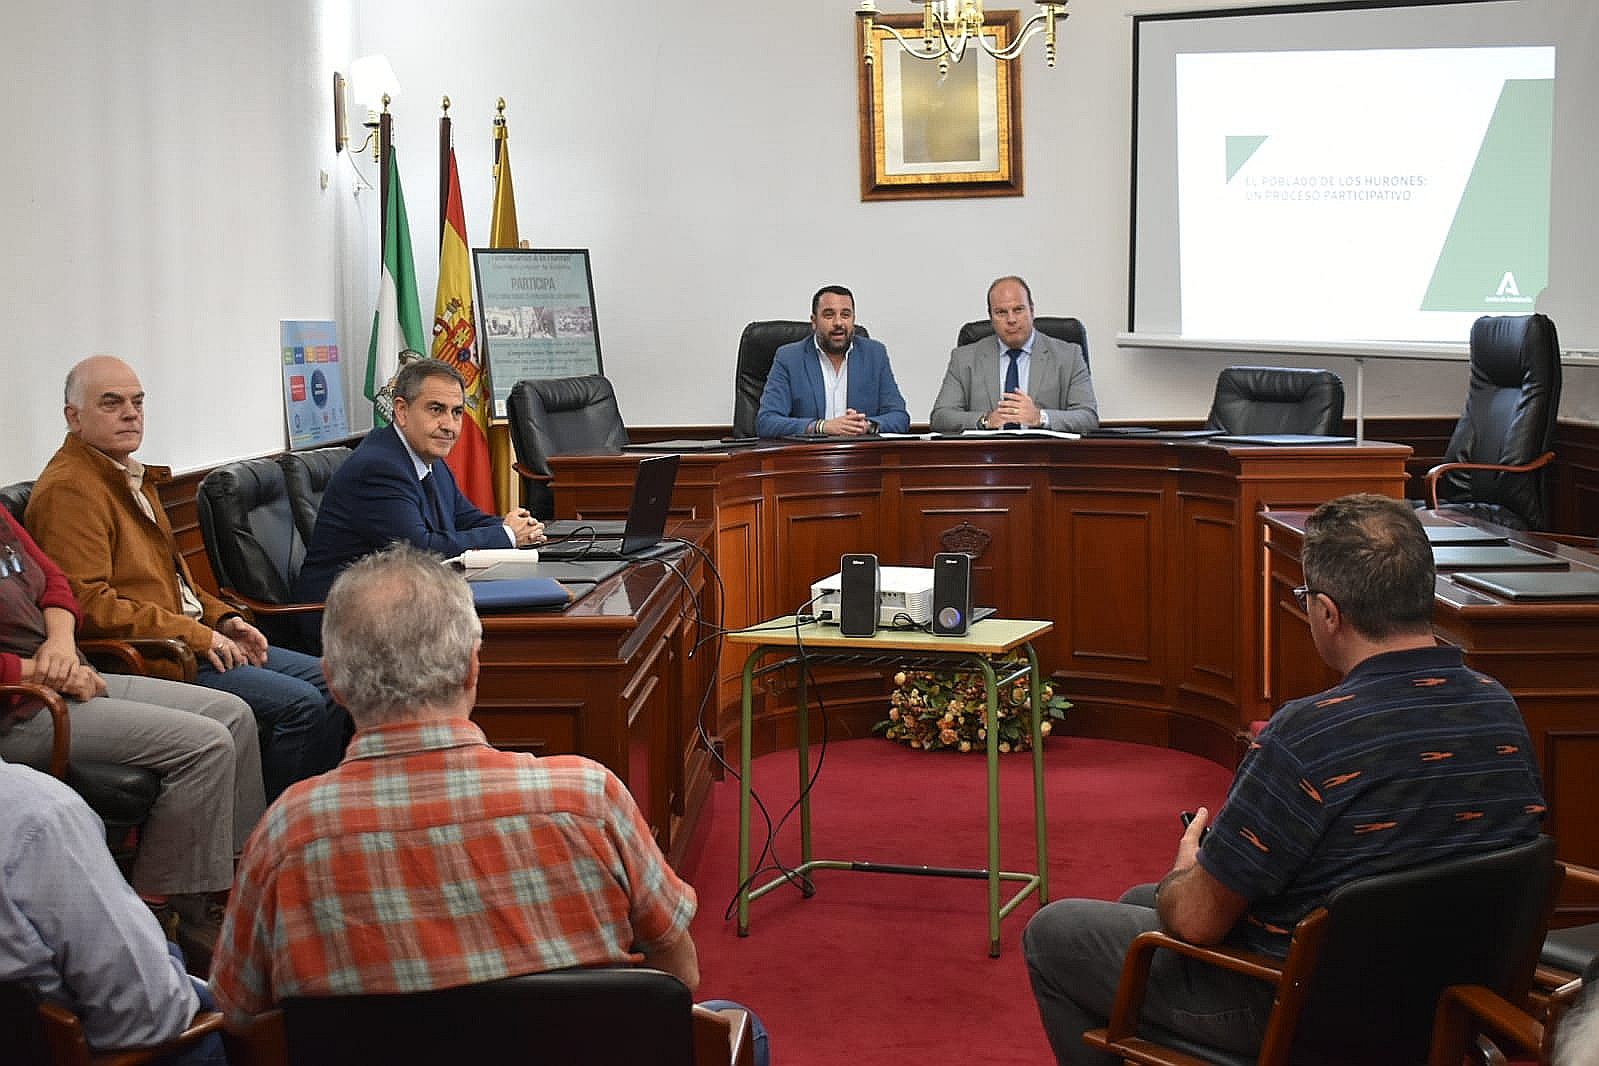 La Junta organiza un encuentro informativo en Algar y anima a participar en el libro y la exposición sobre el Poblado de los Hurones.